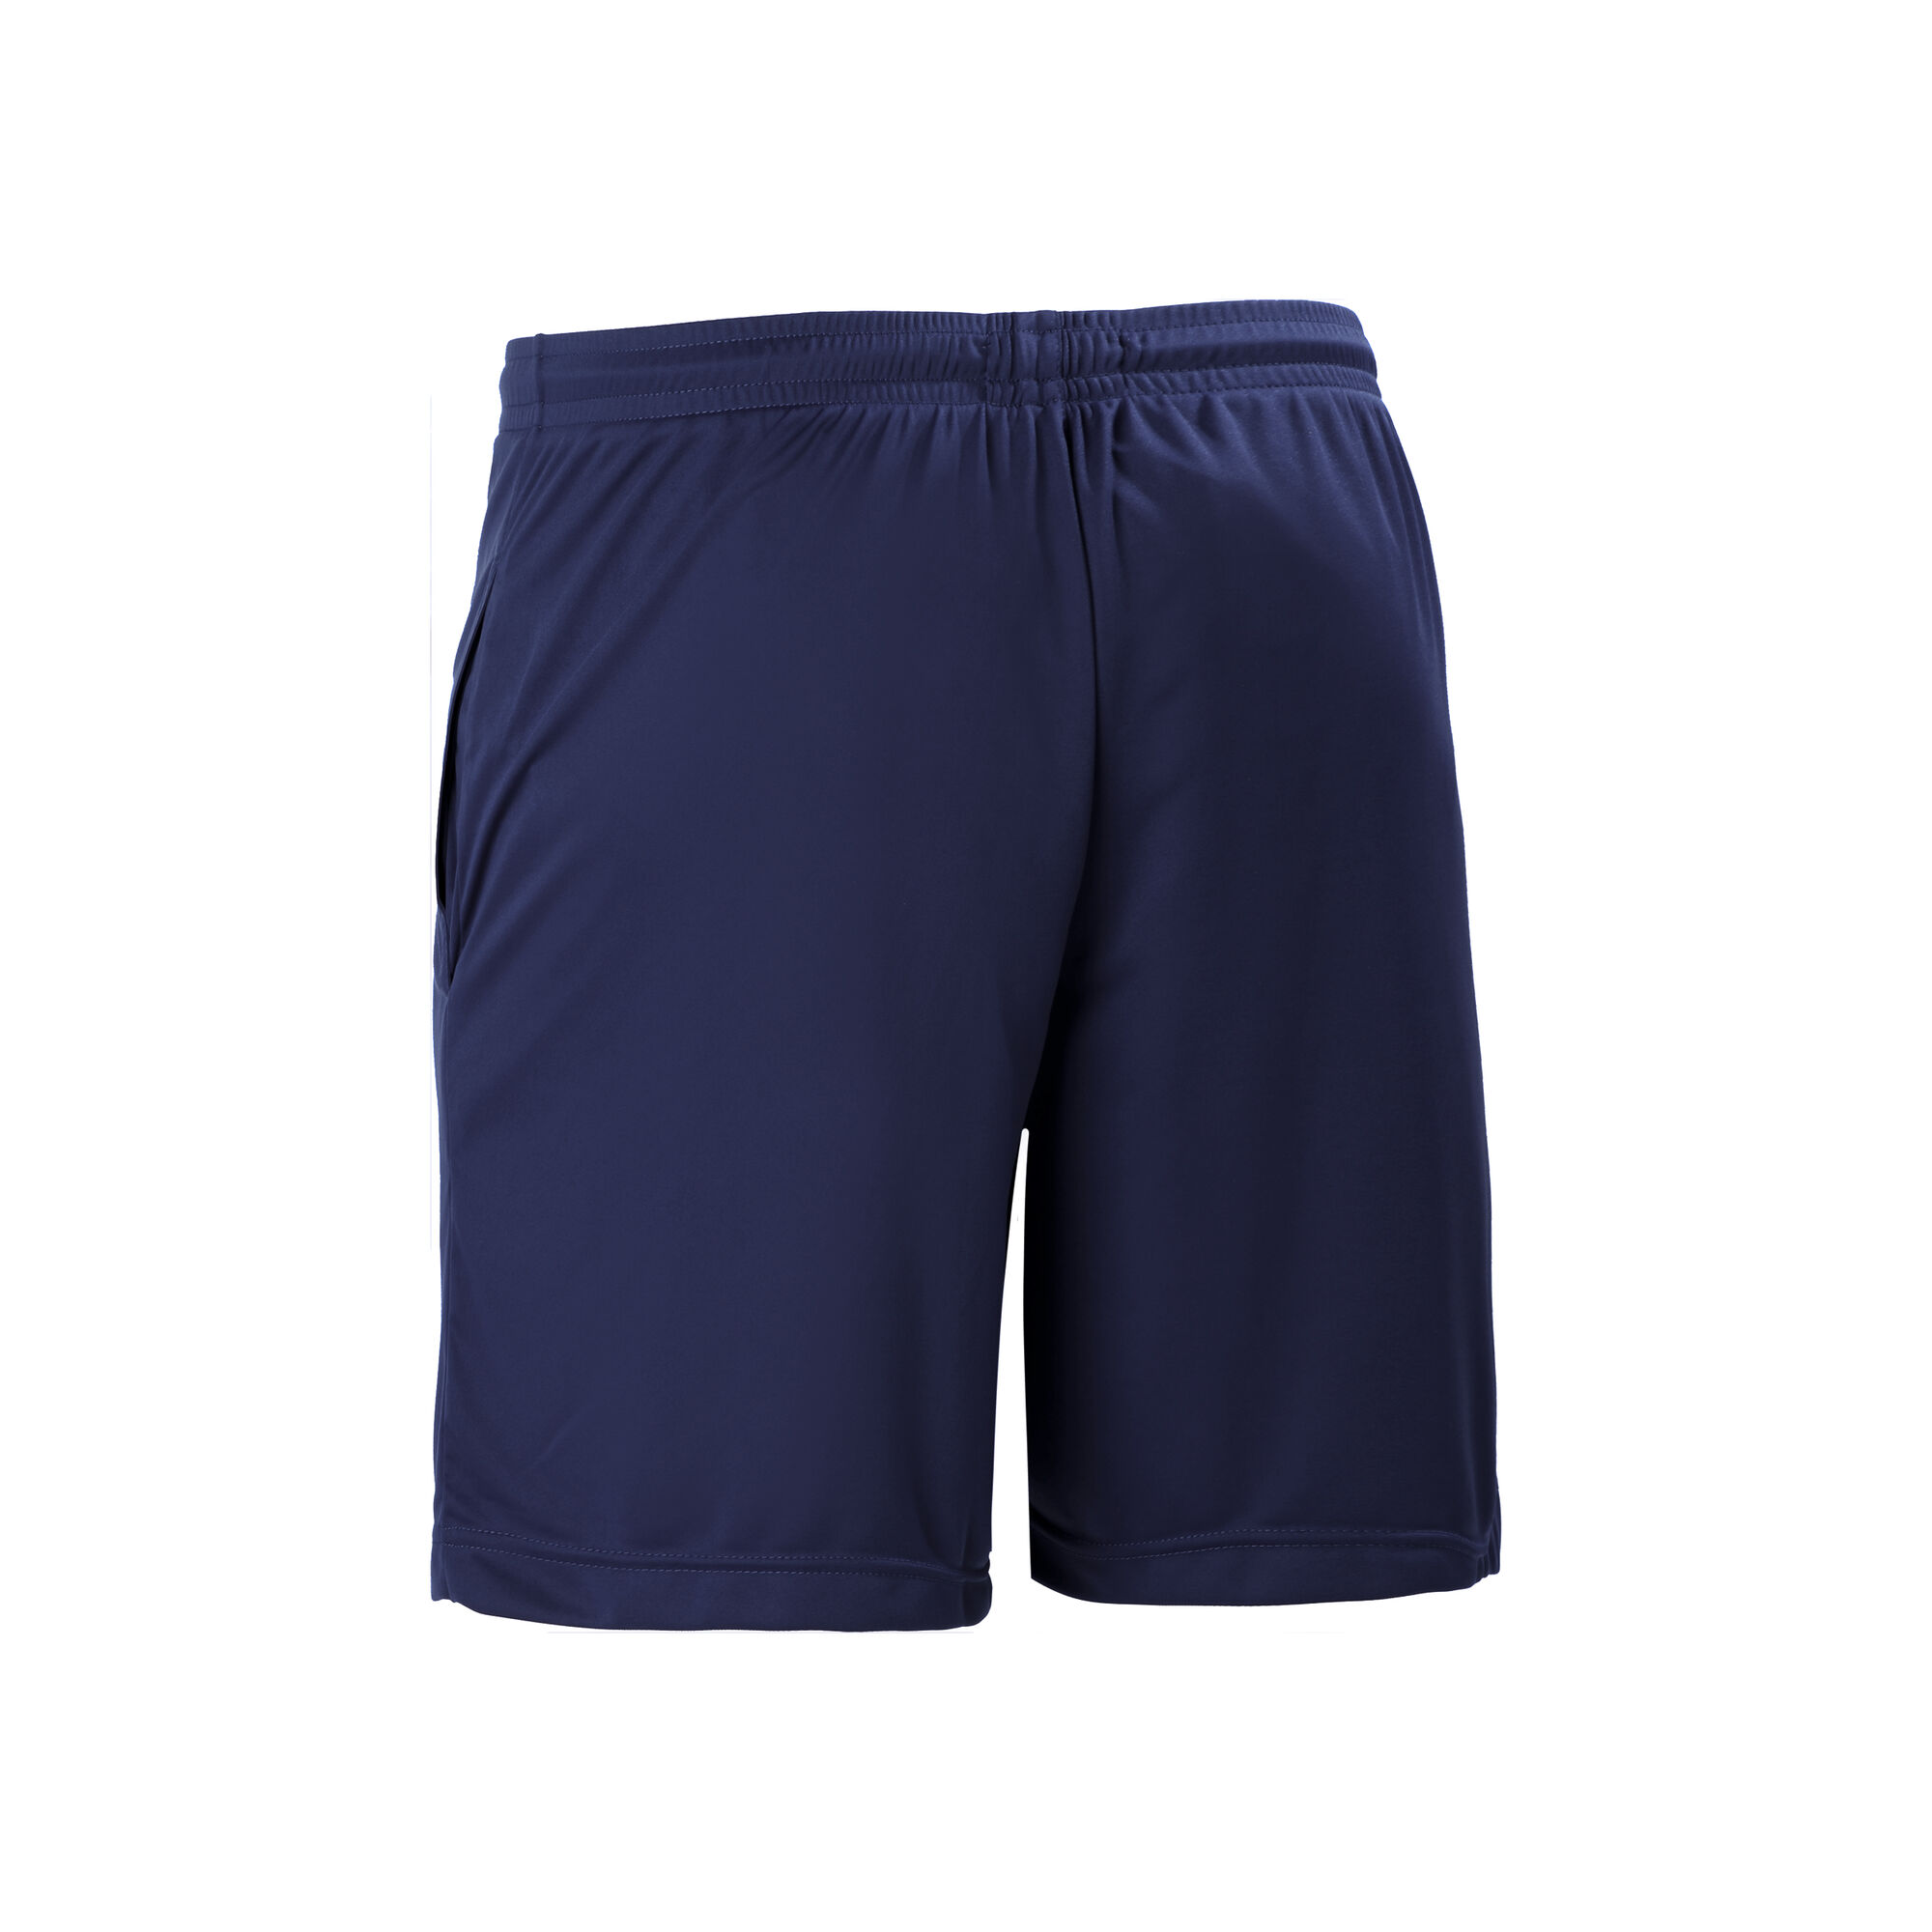 buy Australian Basic Shorts Men - Dark Blue, White online | Tennis-Point